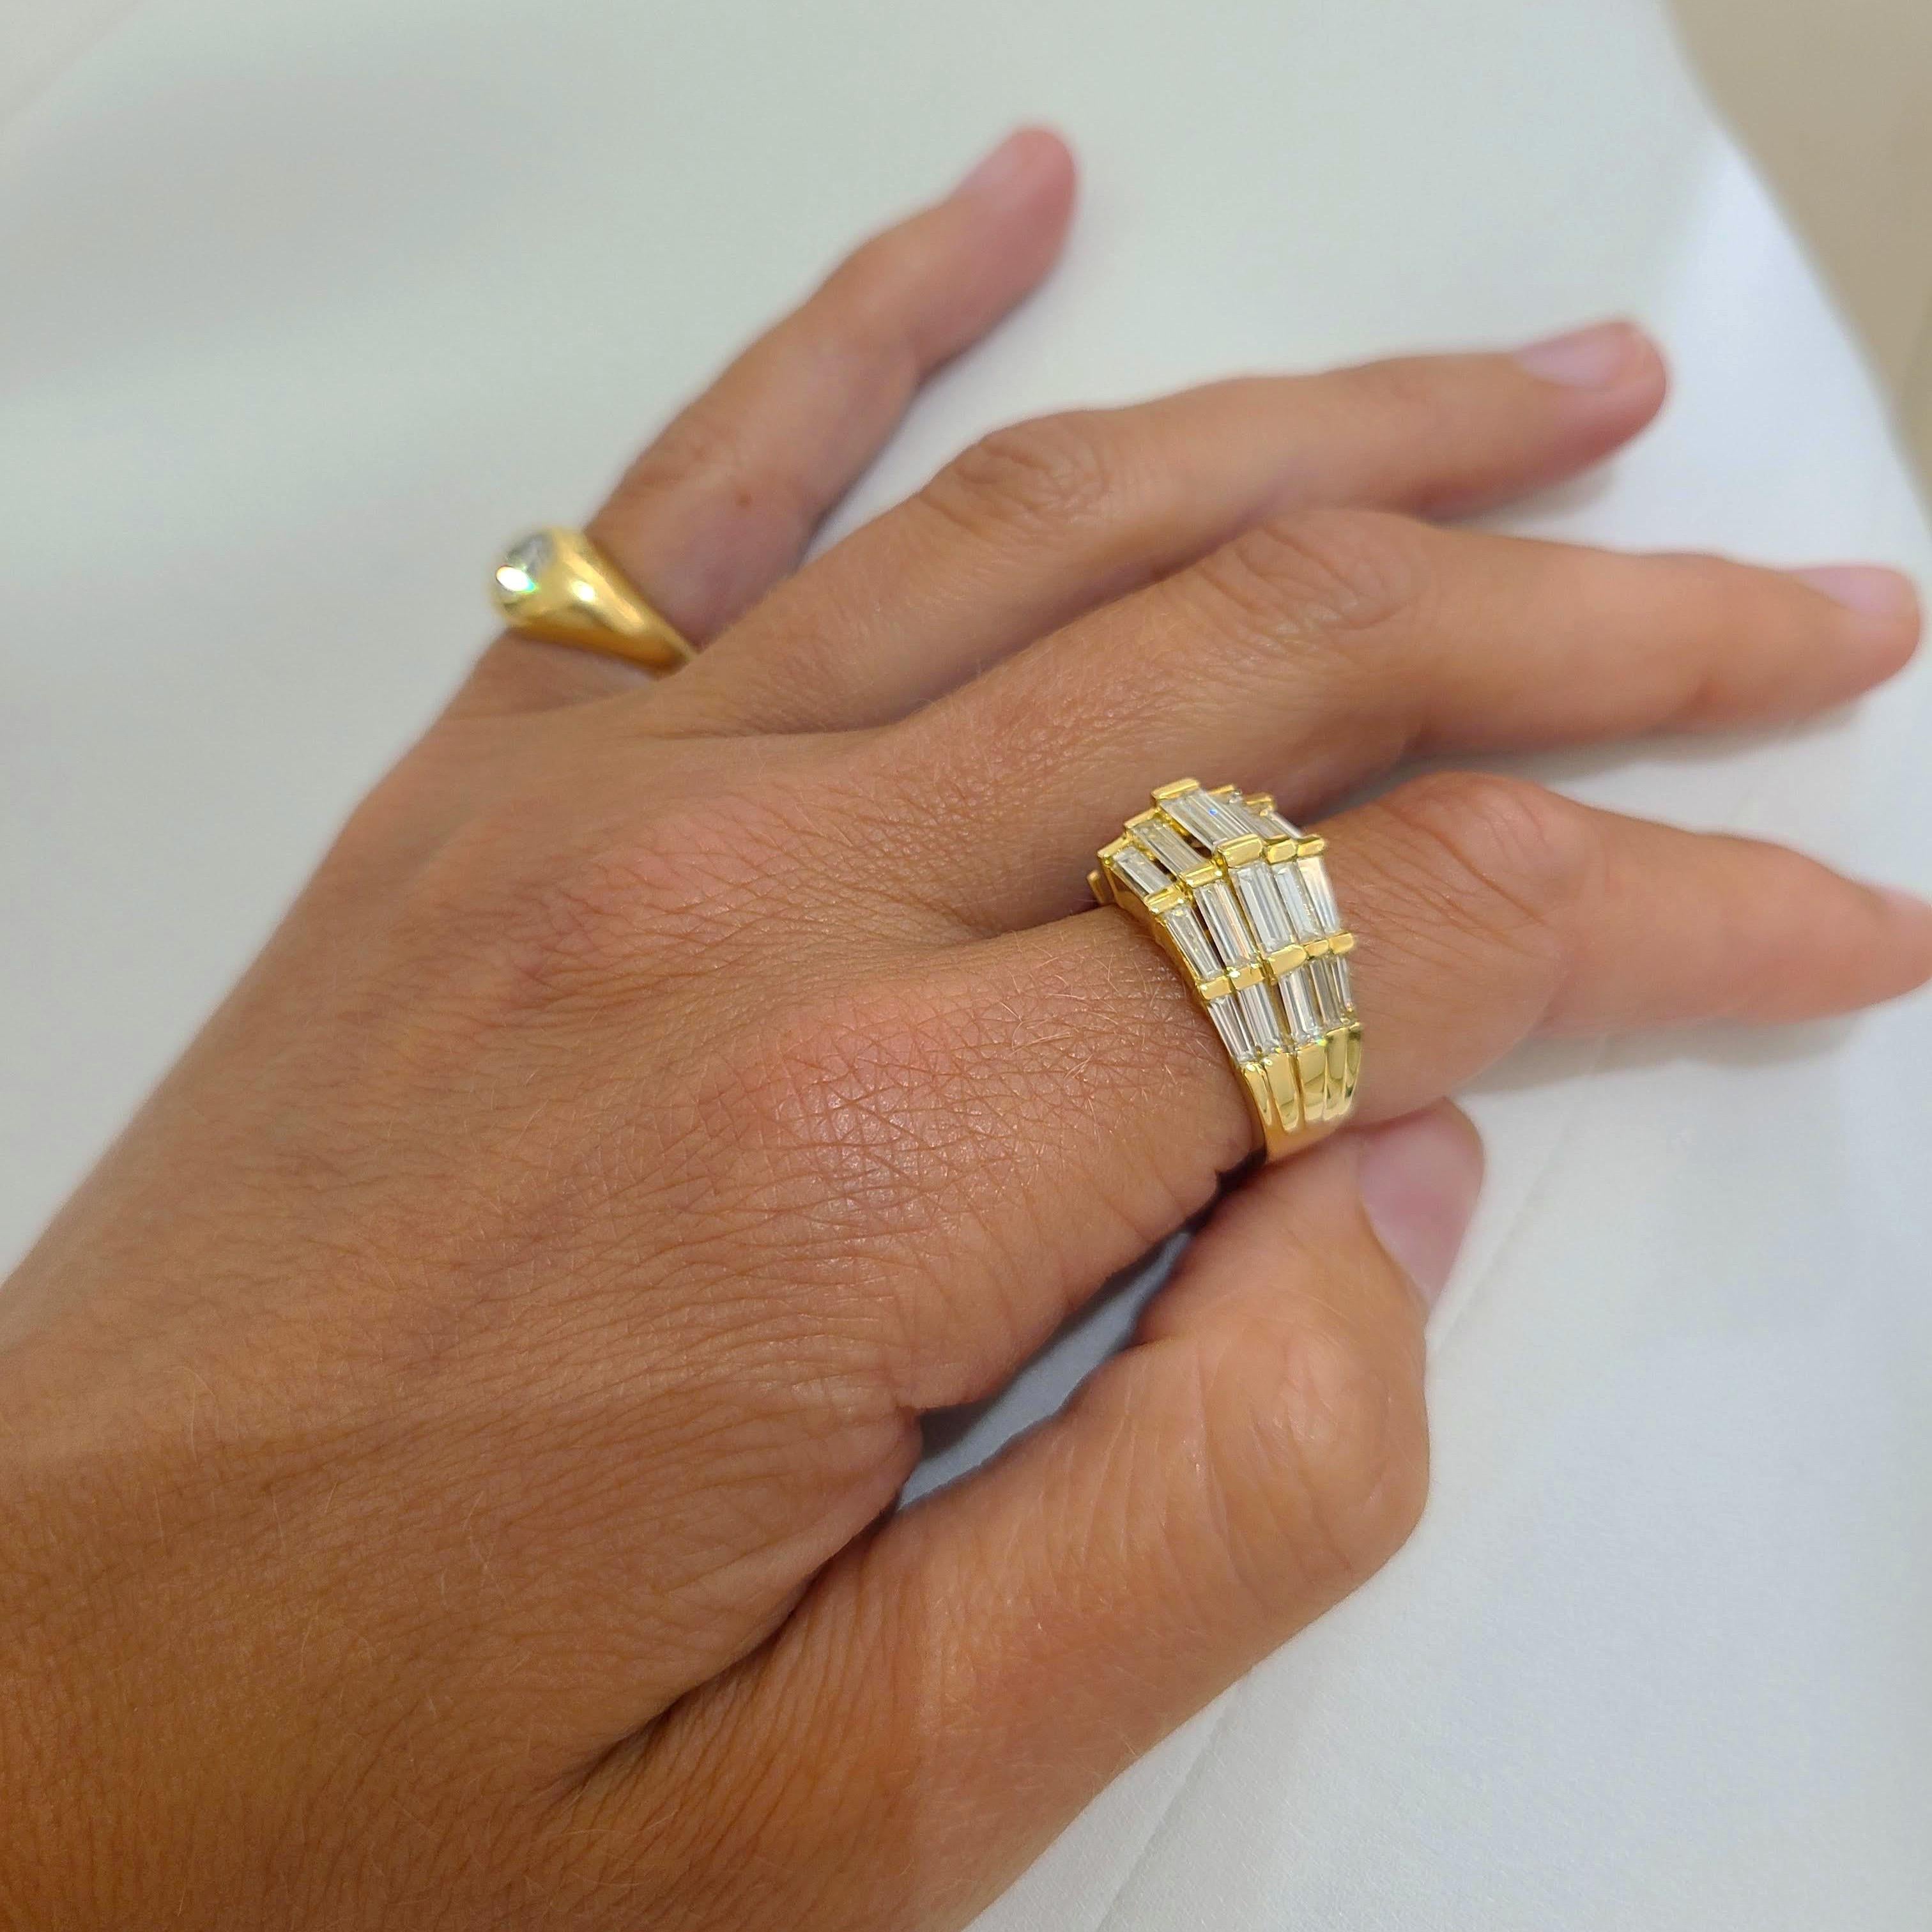 Dieser Ring aus 18 Karat Gelbgold wurde von Nova entworfen. Eine wunderschöne Fassung mit Diamanten im Baguetteschliff, die in einem einzigartigen Stufenmuster horizontal gefasst sind. 
Ring Größe 6,25 Größenoptionen sind verfügbar
Der Ring hat